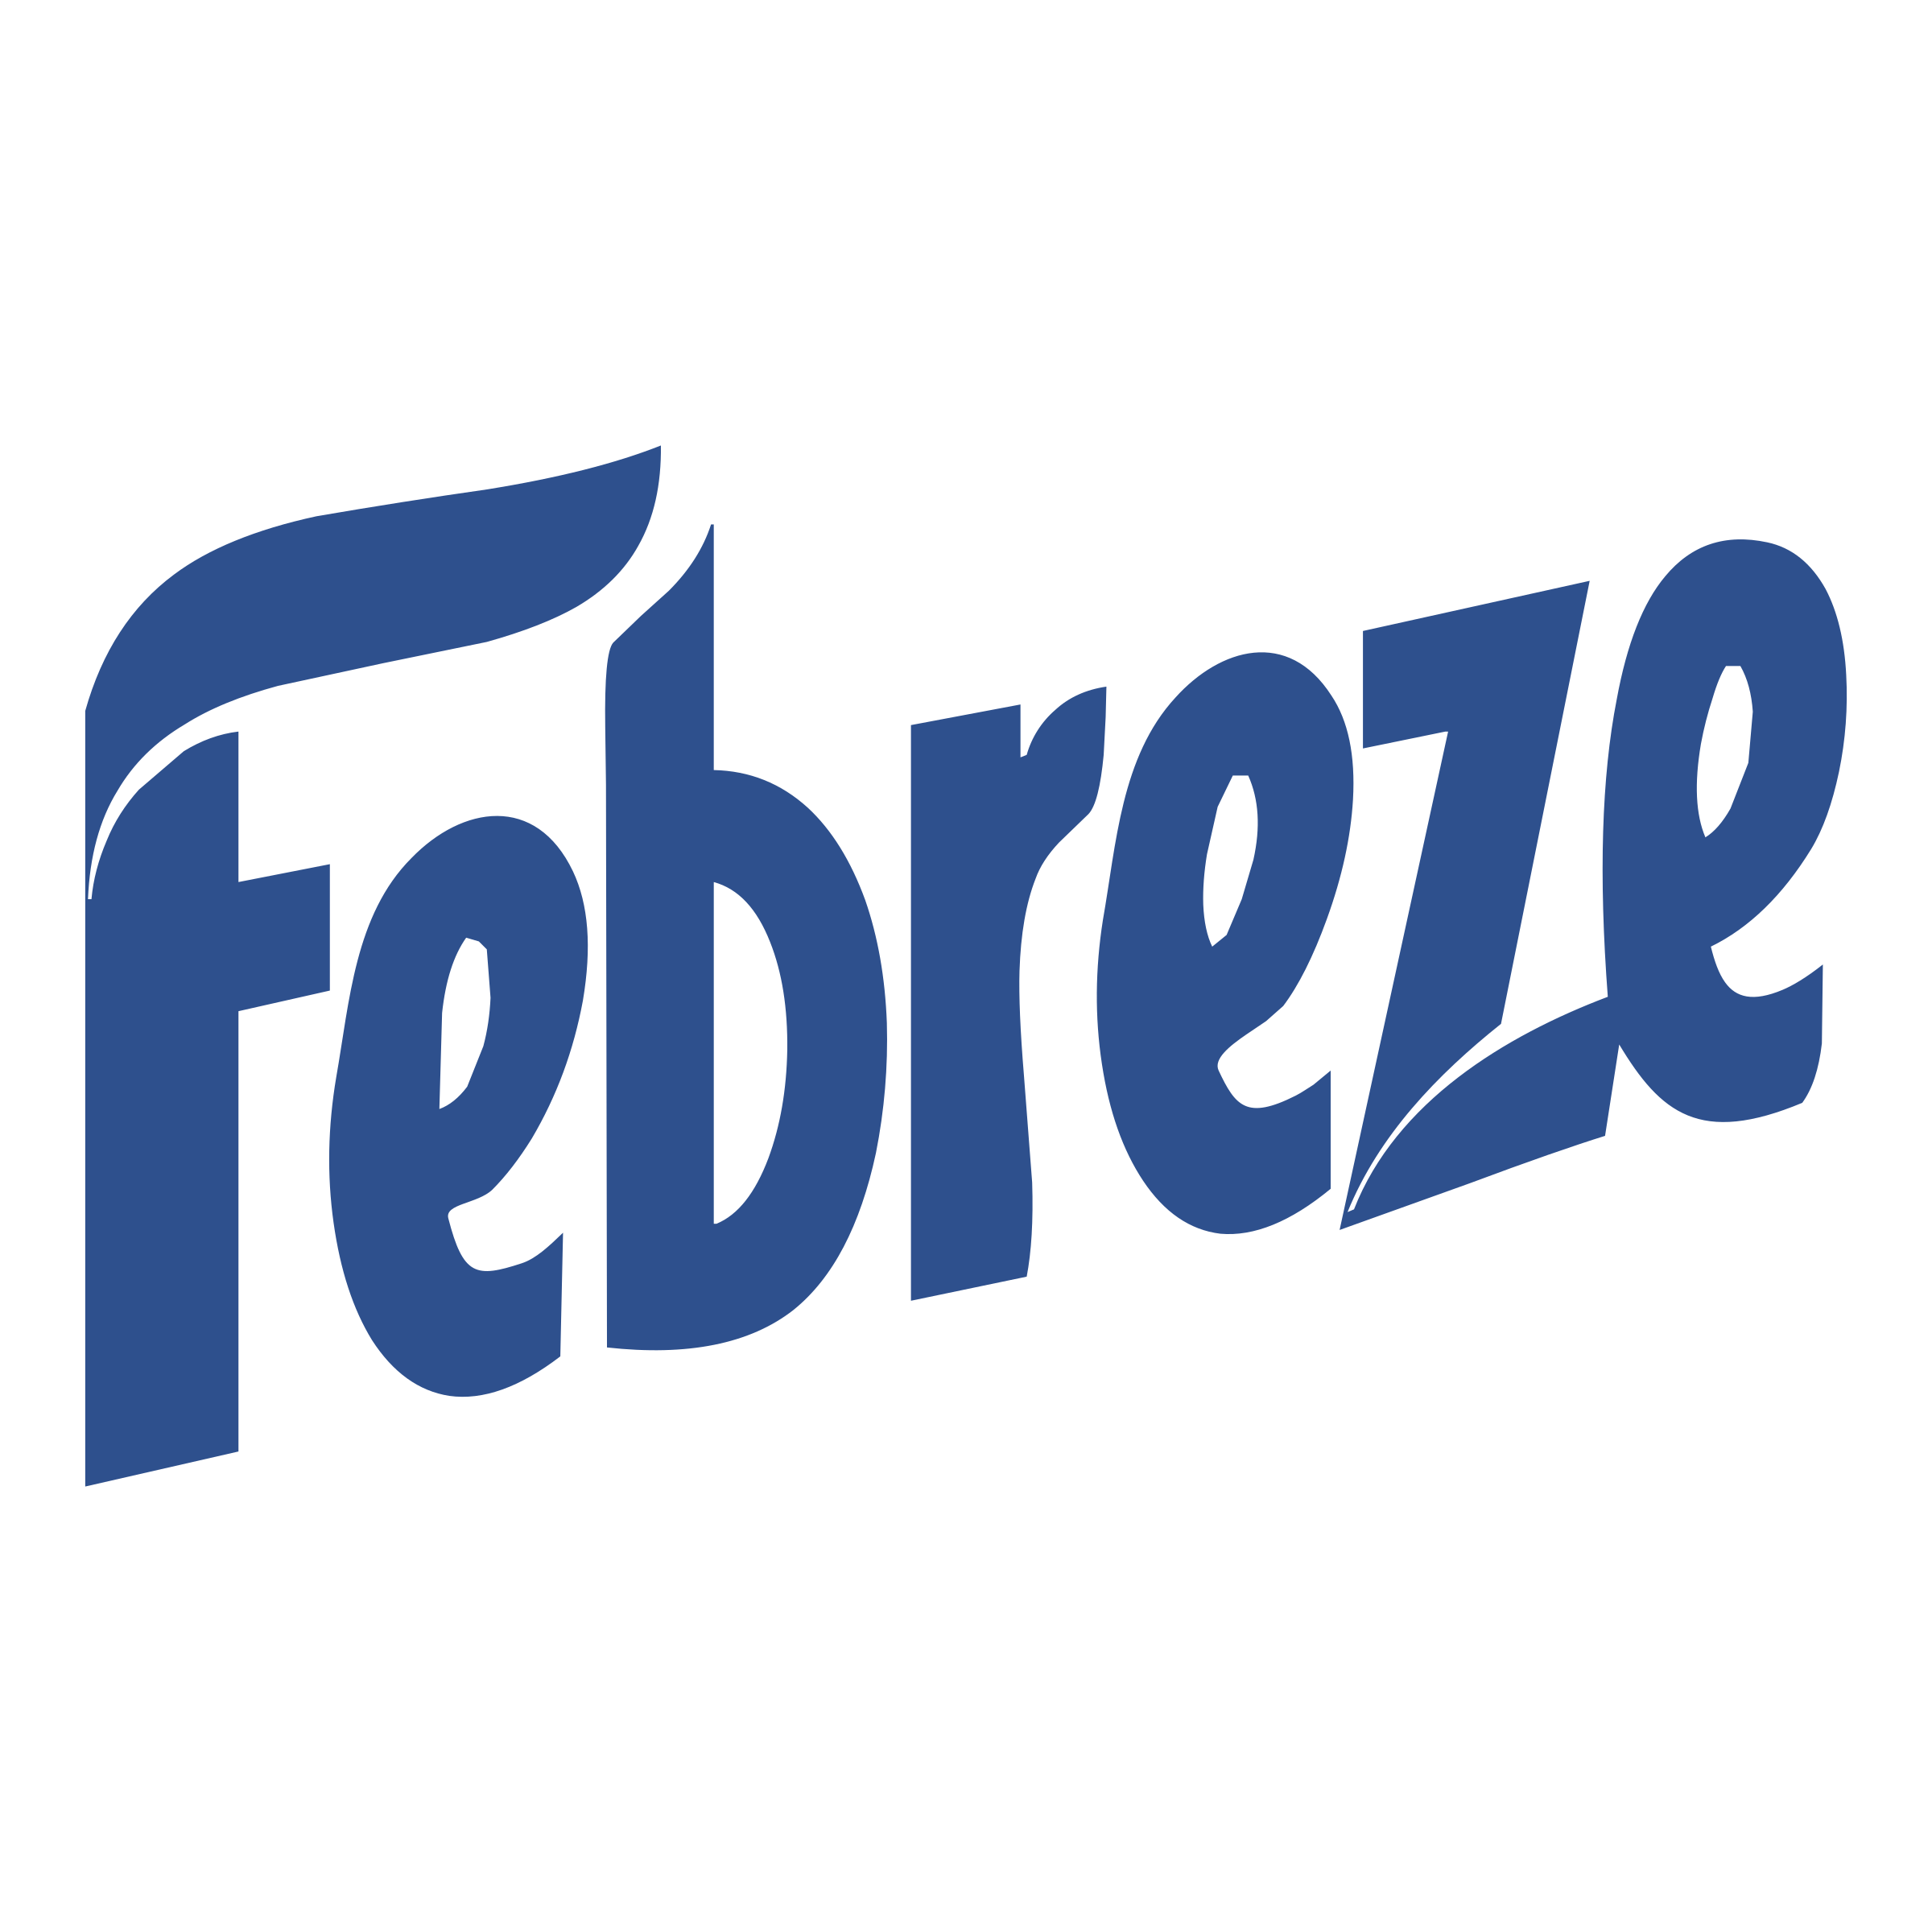 Frebeze Logo - Febreze Logo PNG Transparent & SVG Vector